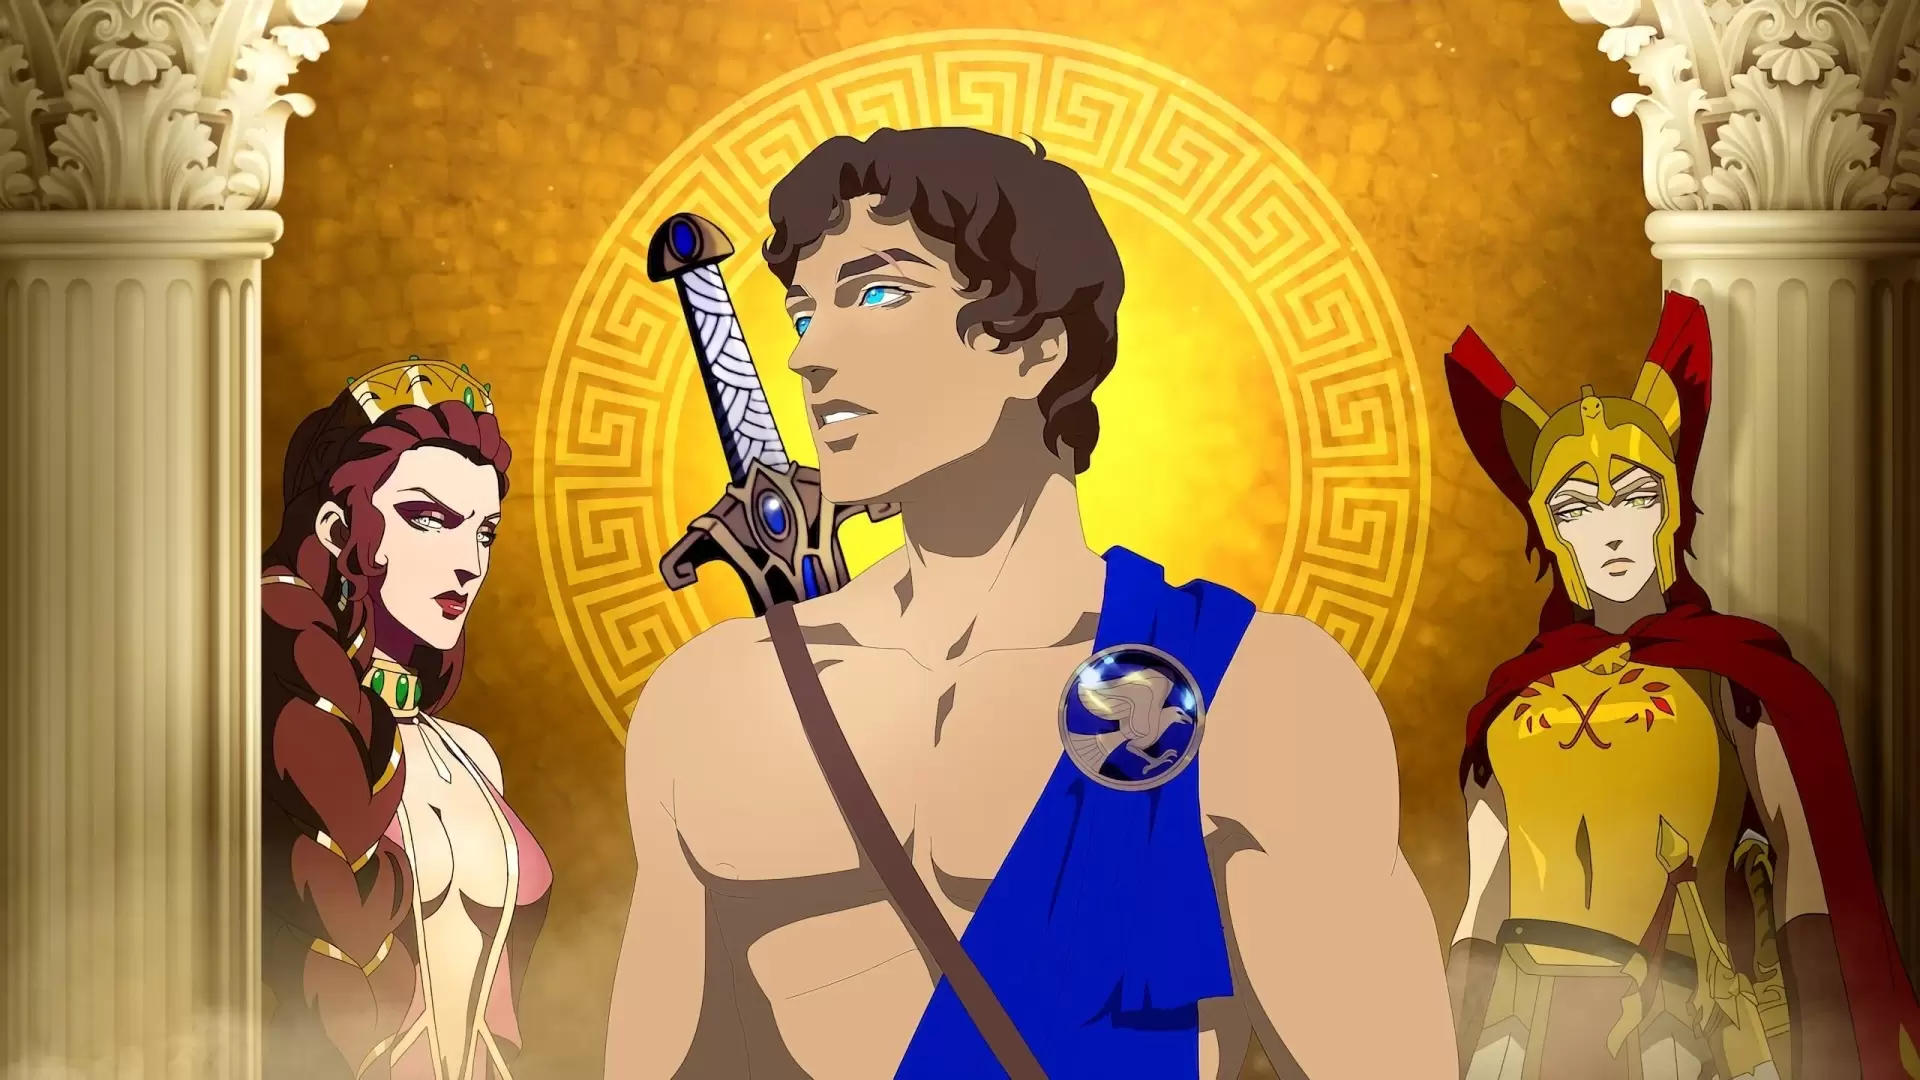 دانلود انیمیشن Blood of Zeus 2020 (خون زئوس) با زیرنویس فارسی و تماشای آنلاین